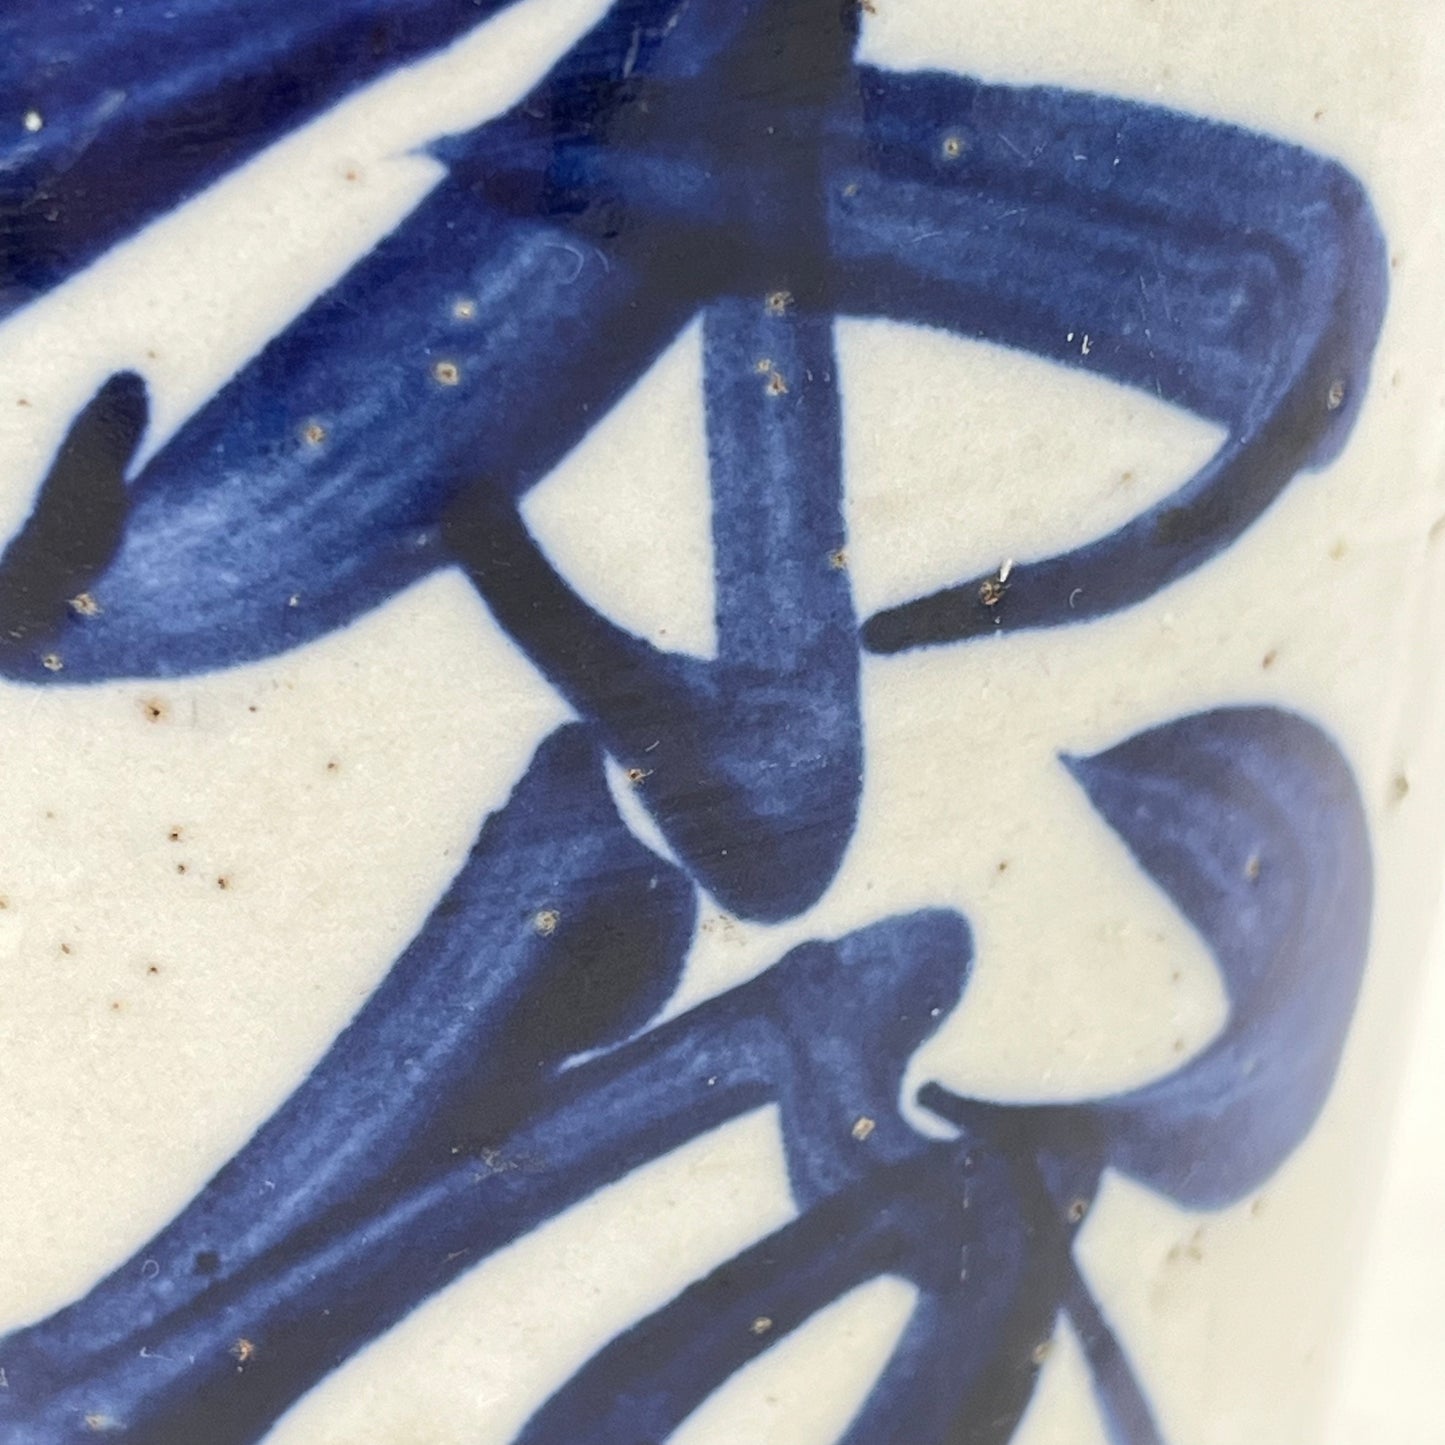 Antique Japanese Meiji Era (c1890's) Signed Tokkuri Sake Jug Sake Blue (Vase) 9”H